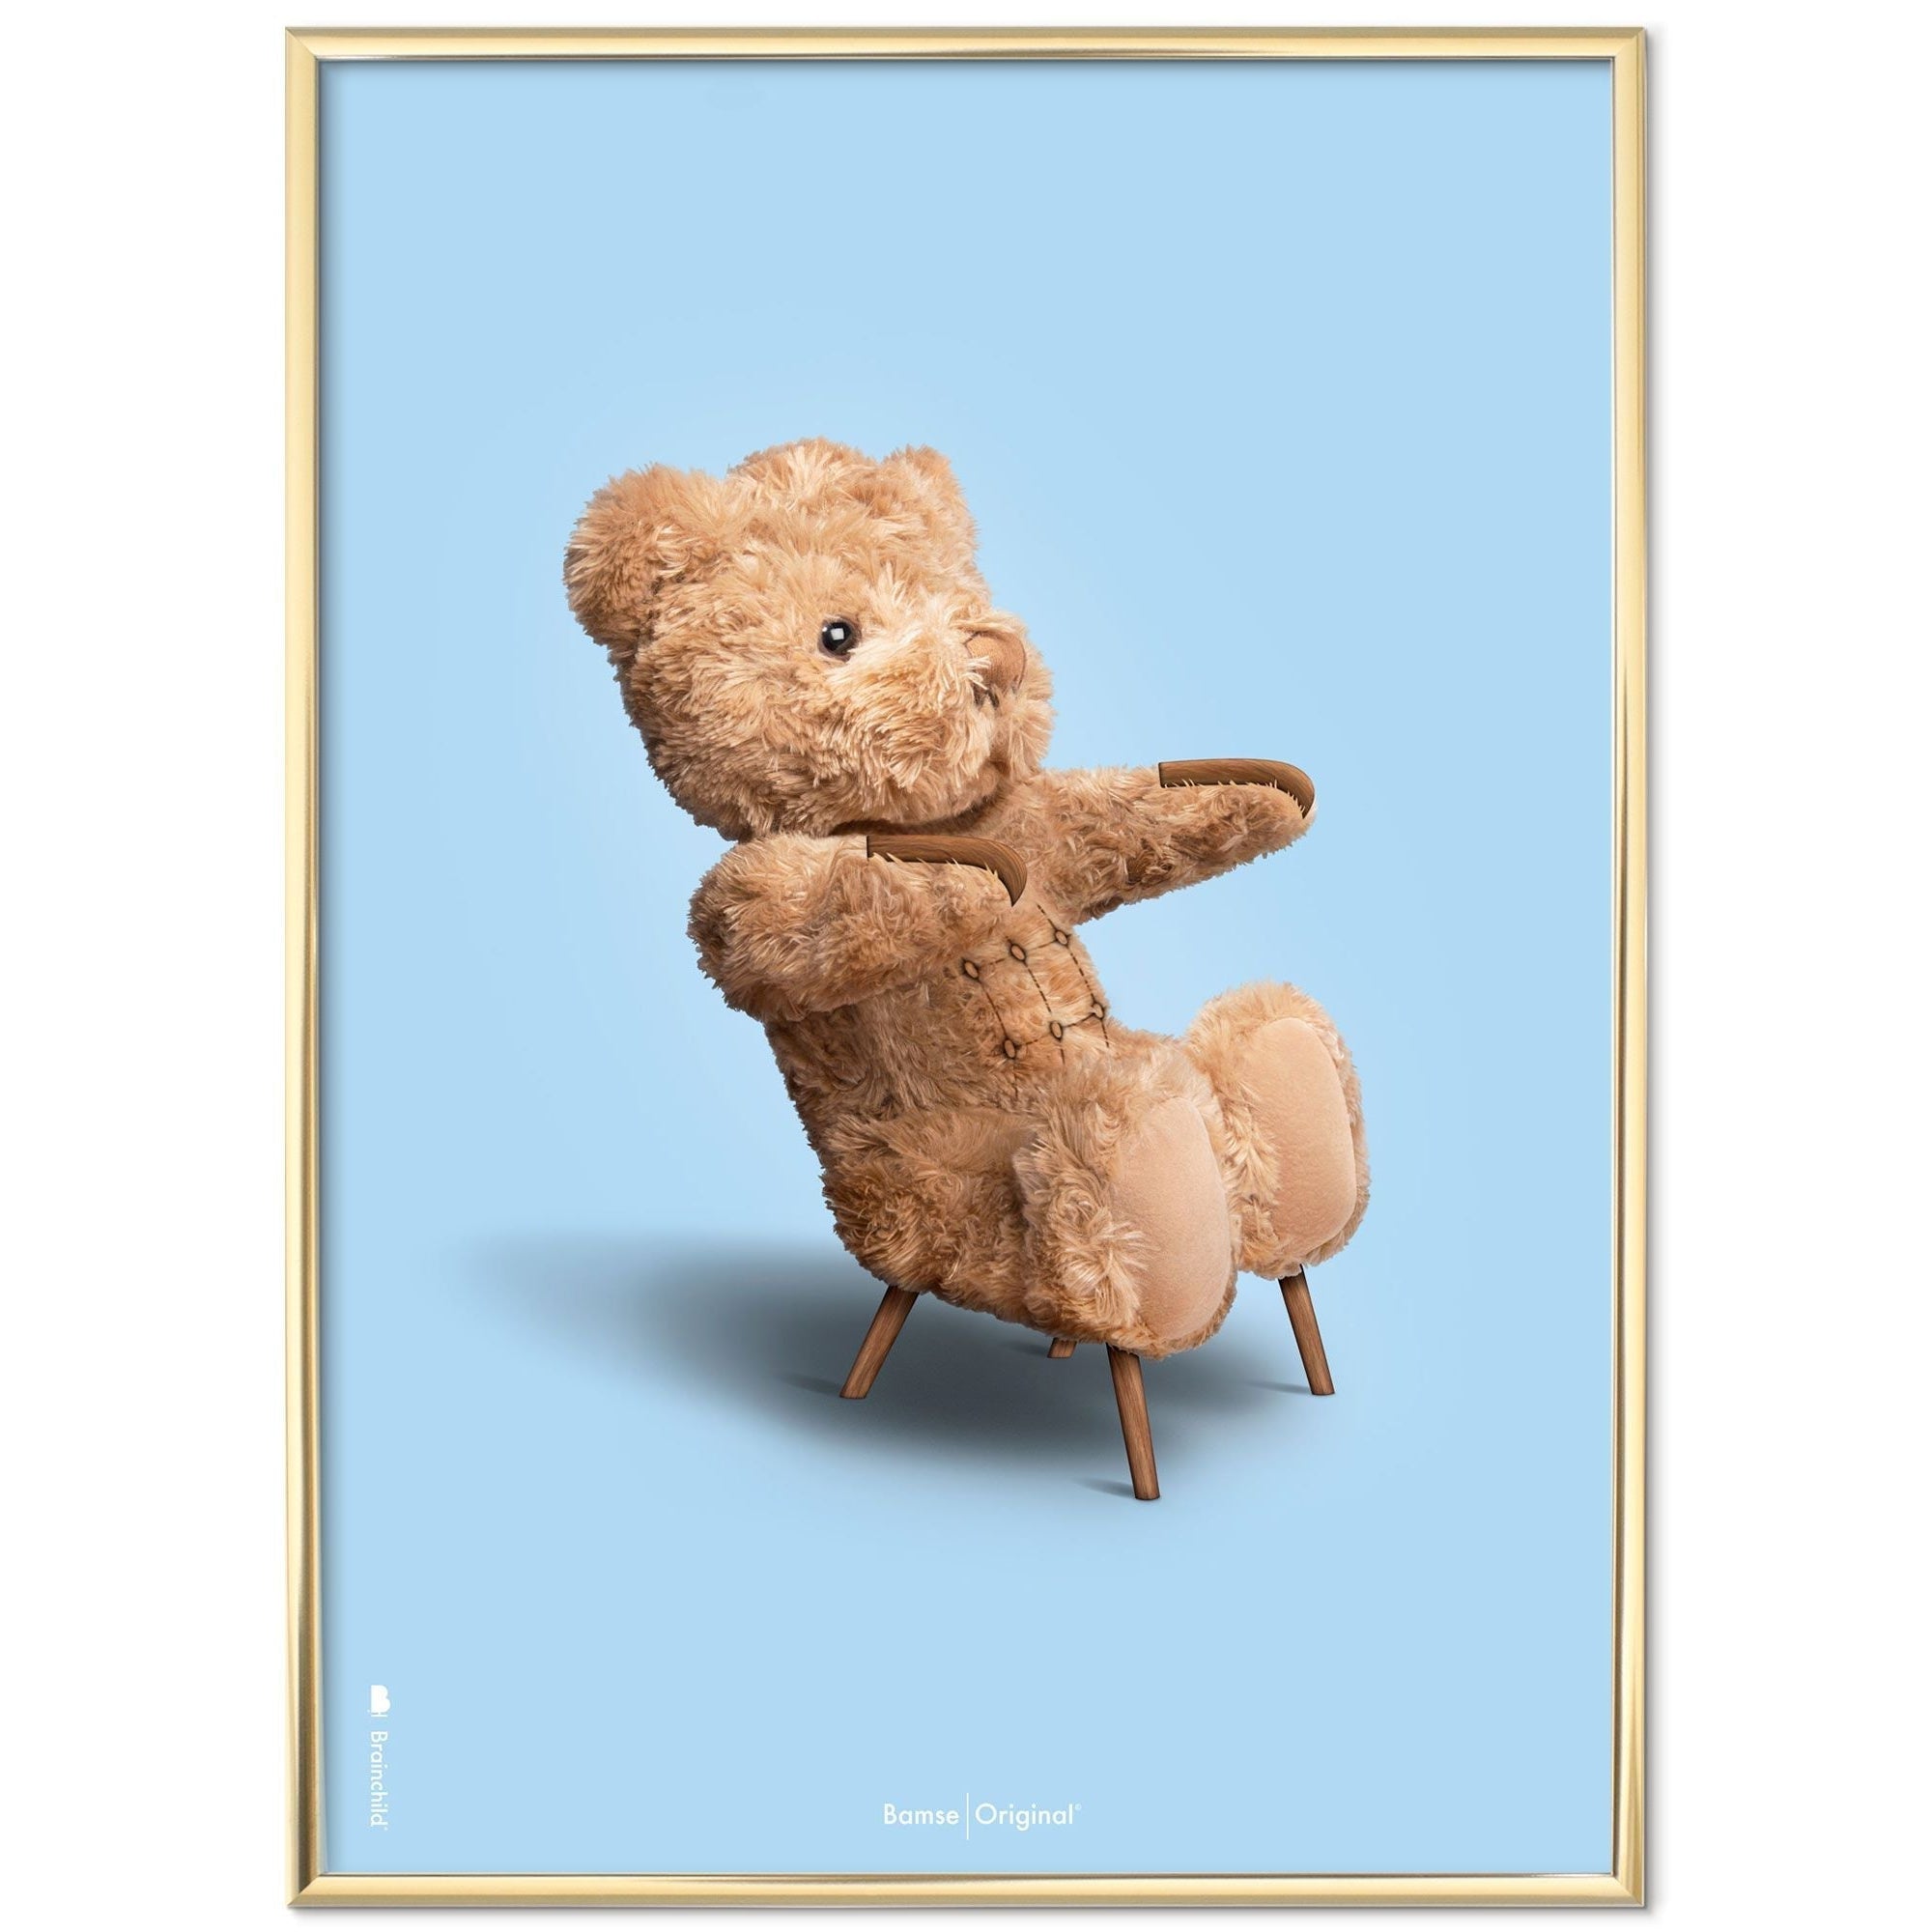 Brainchild Teddy Bear Classic plakát mosazný barevný rám 50x70 cm, světle modré pozadí